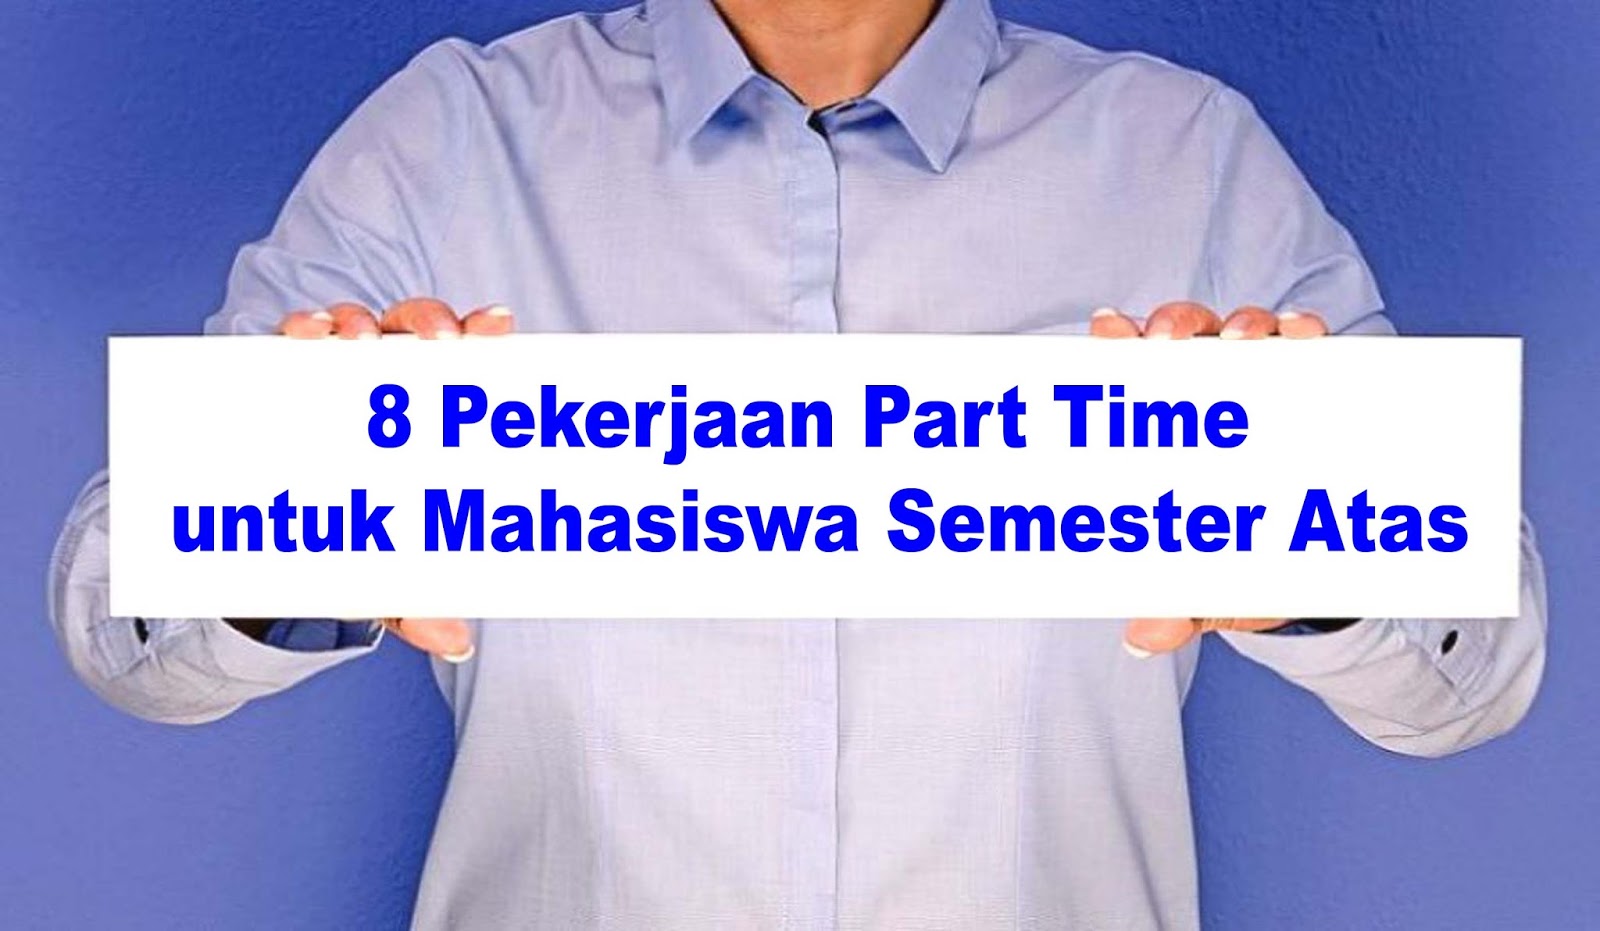 8 Pekerjaan Part Time untuk Mahasiswa Semester Atas yang 